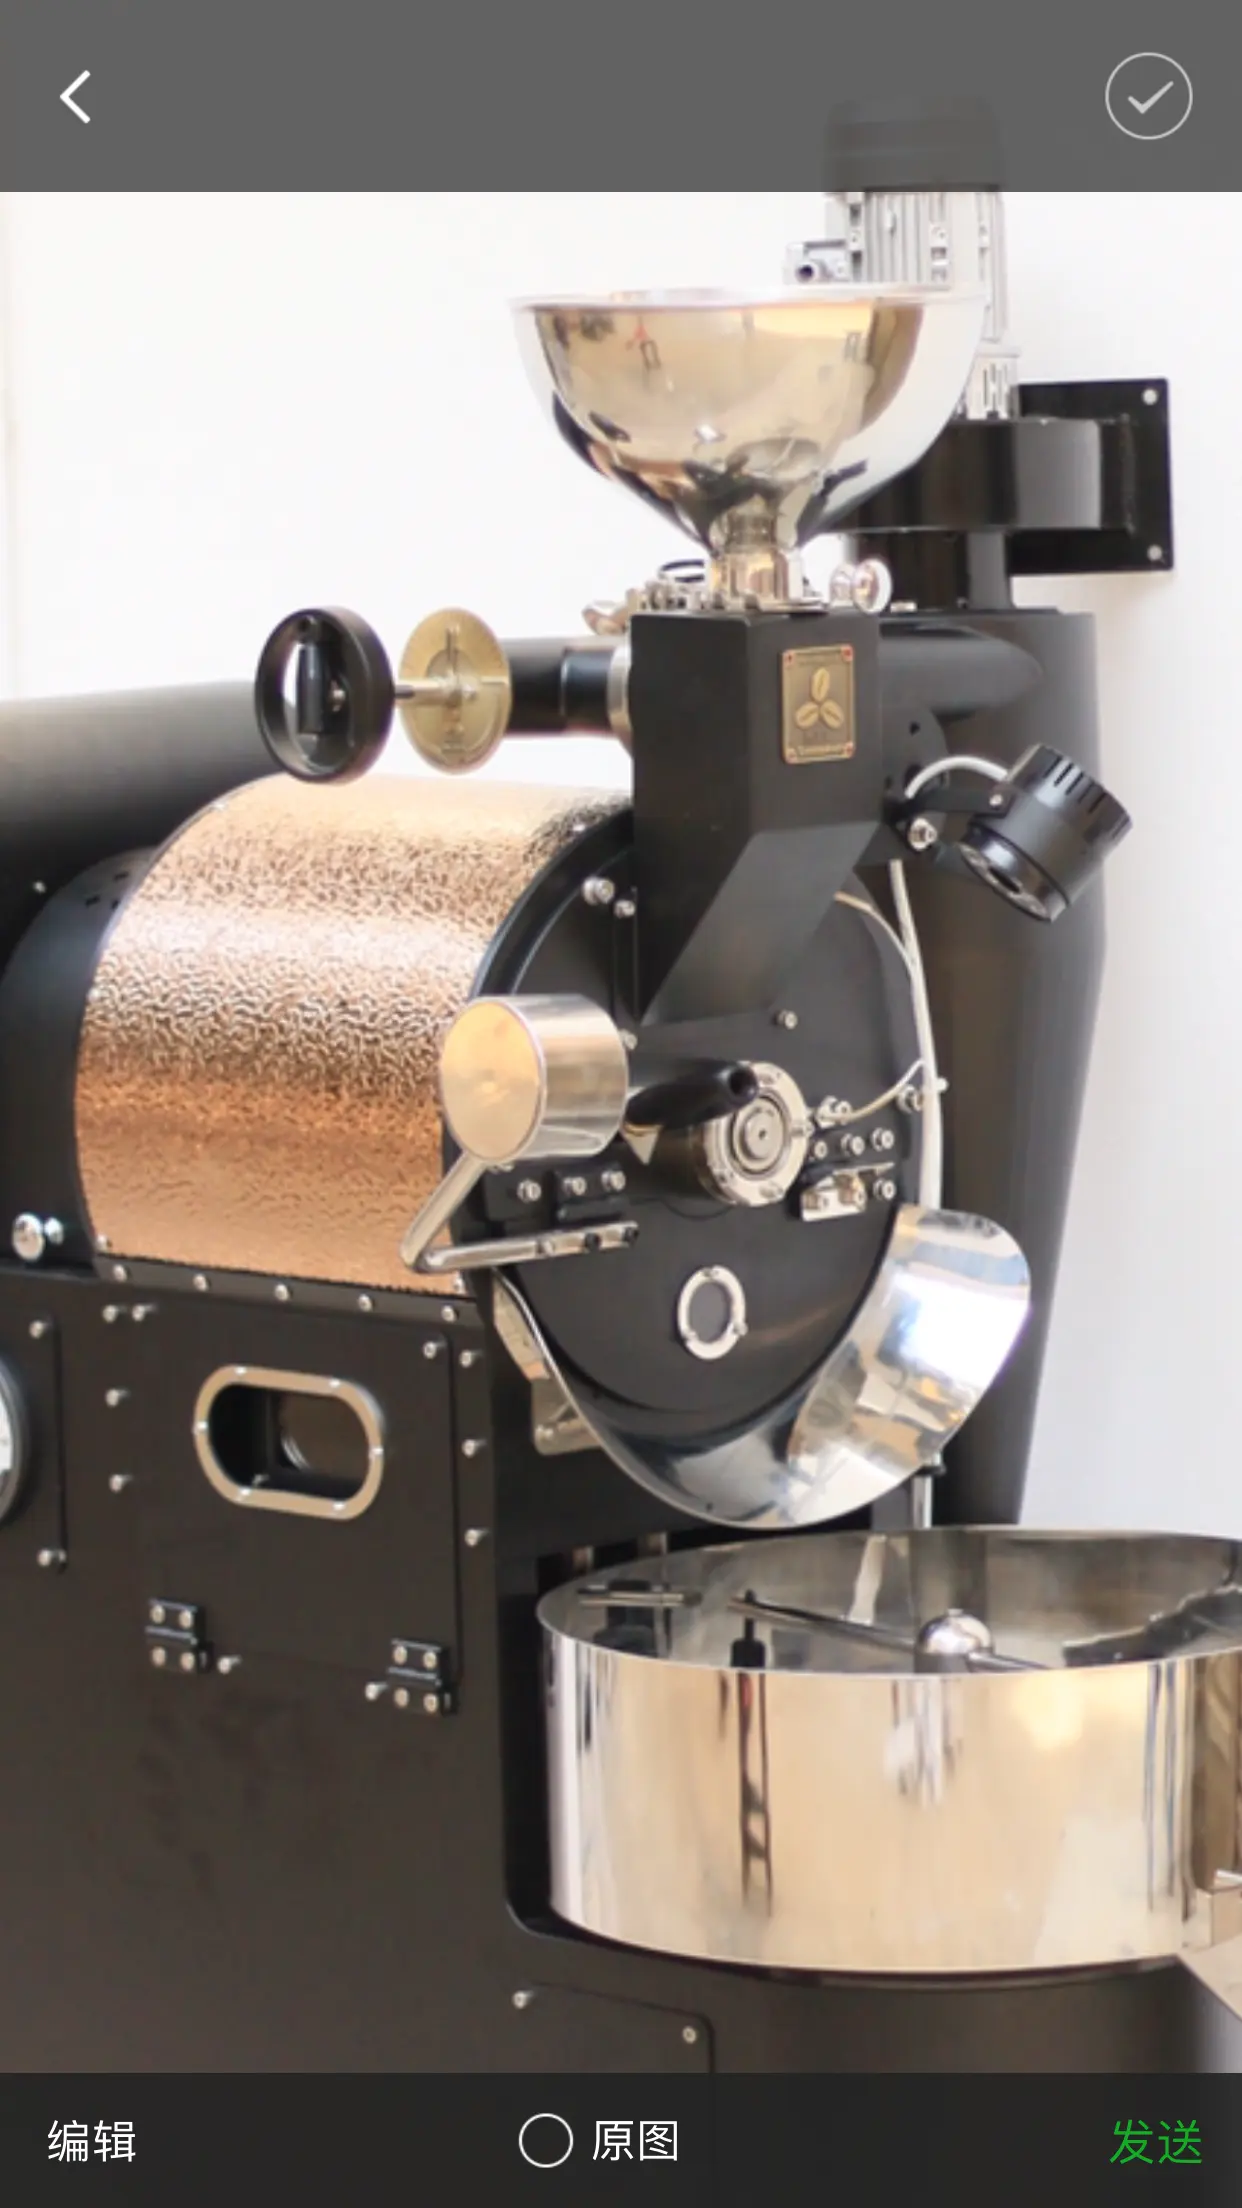 Tostador de café SANTOKER R3 máquinas tostadoras de café industriales 0,5-3kg Tostador de café